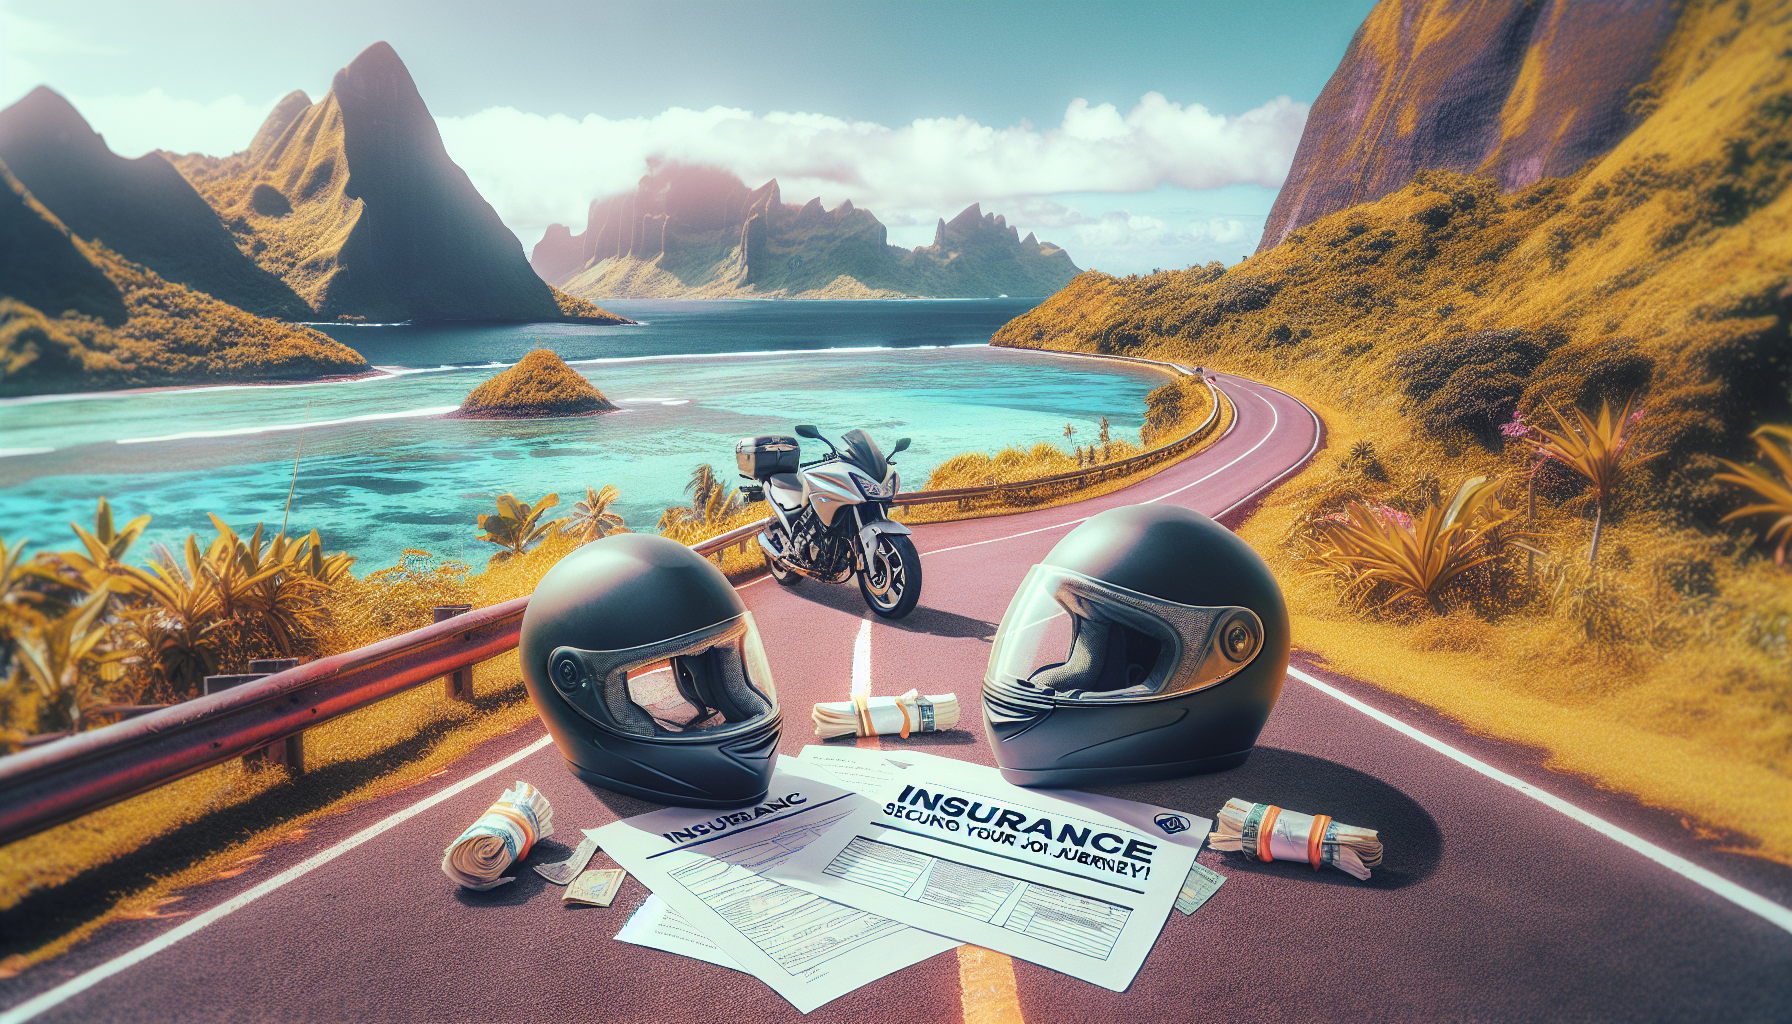 assurance moto 974 : découvrez la garantie responsabilité civile dans une assurance moto à la réunion pour rouler en toute sérénité.